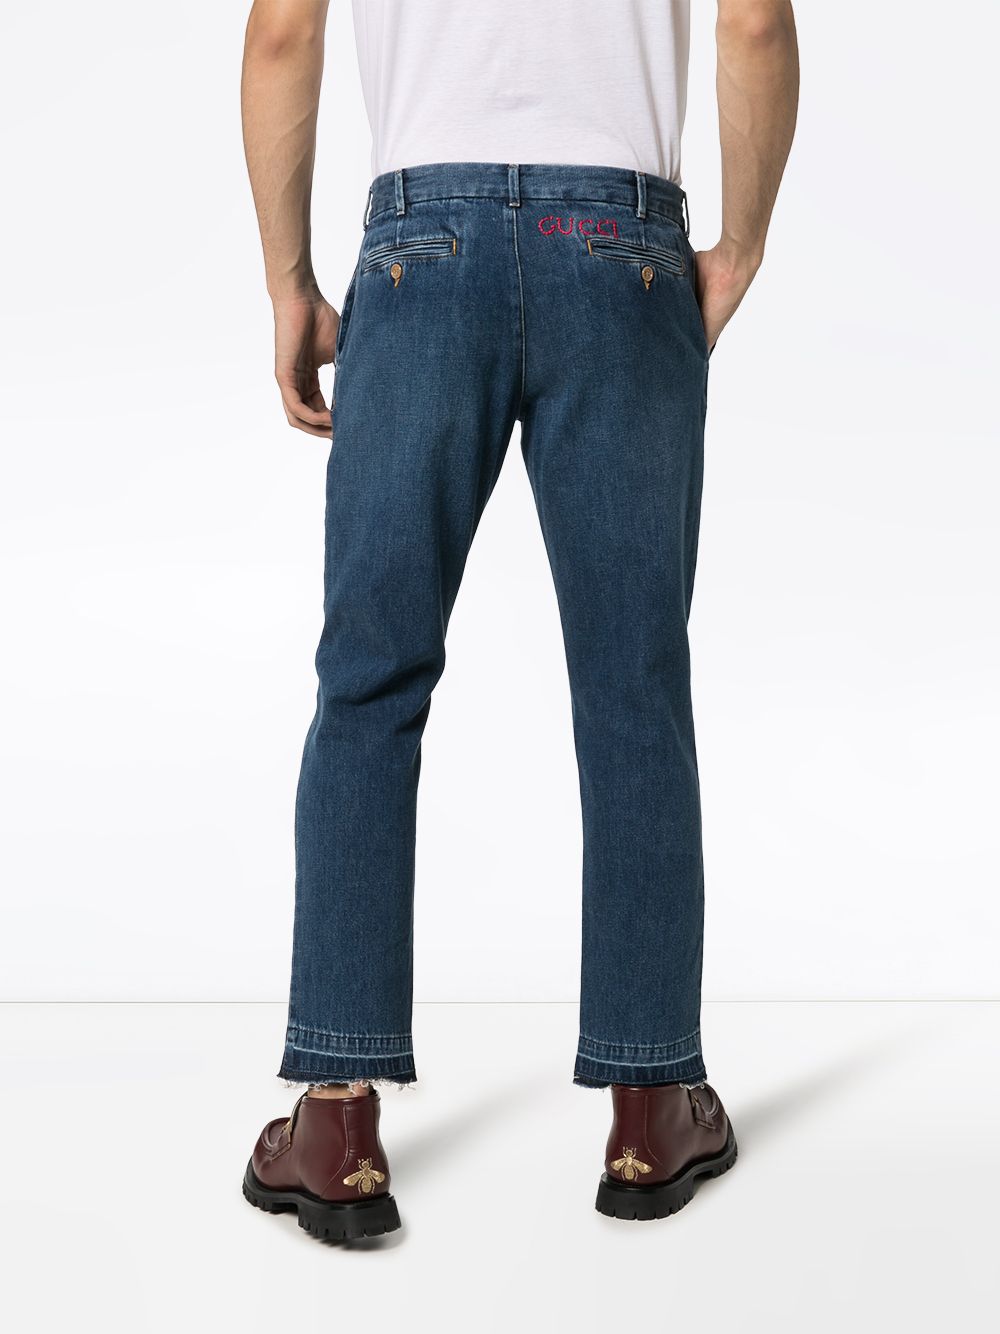 фото Gucci зауженные джинсы с вышитым логотипом